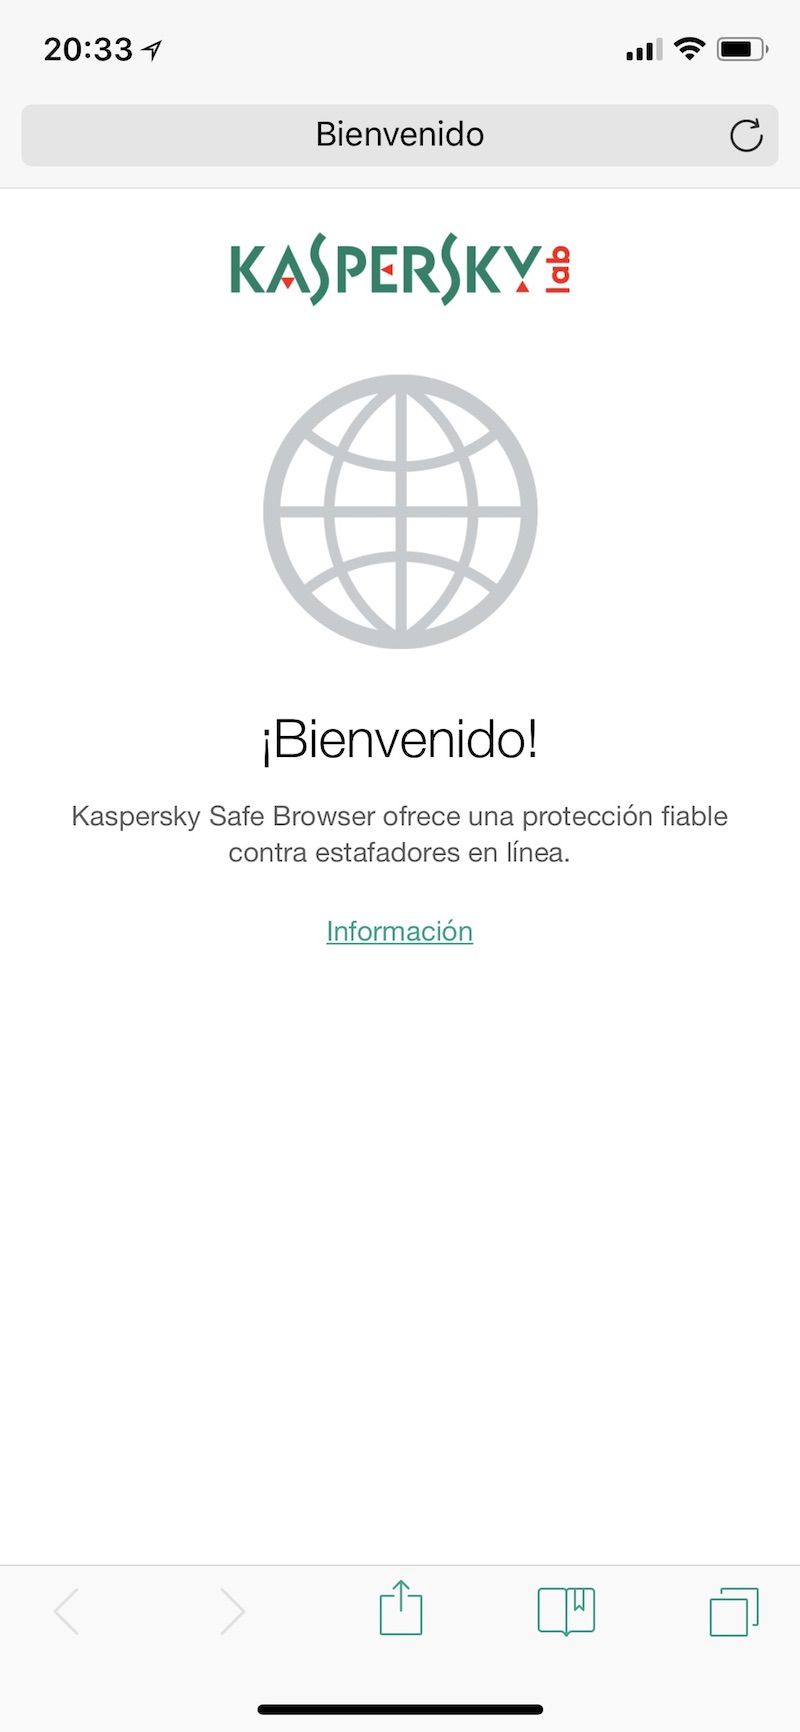 kaspersky safe browser iphone